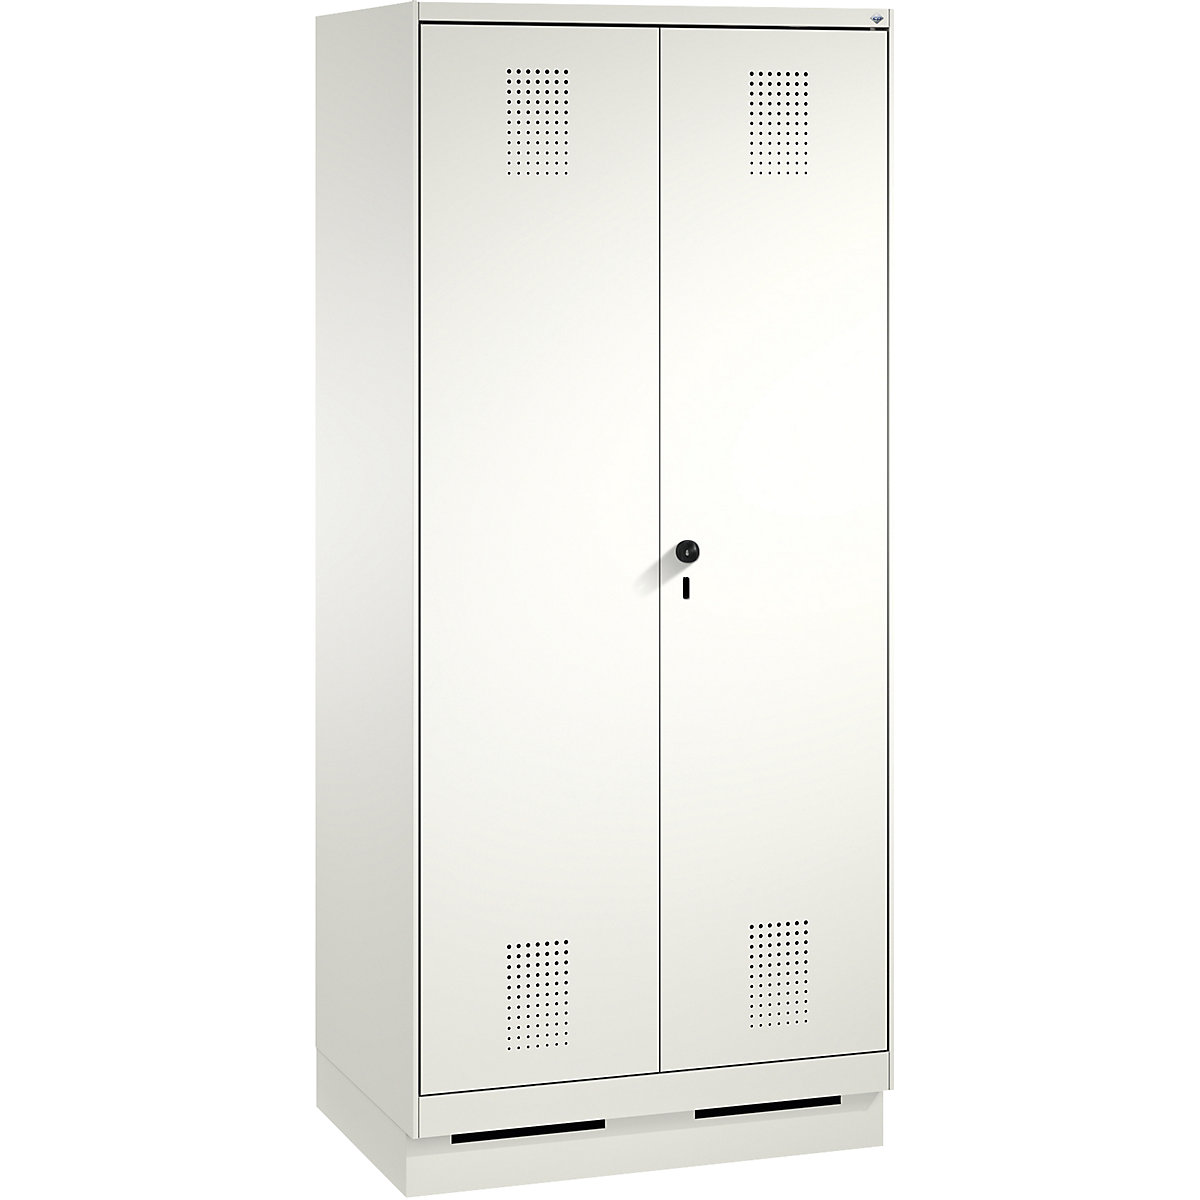 Garderobna omara EVOLO, dvokrilna vrata – C+P, 2 razdelka, širina razdelka 400 mm, s podnožjem, prometno bele / prometno bele barve-6